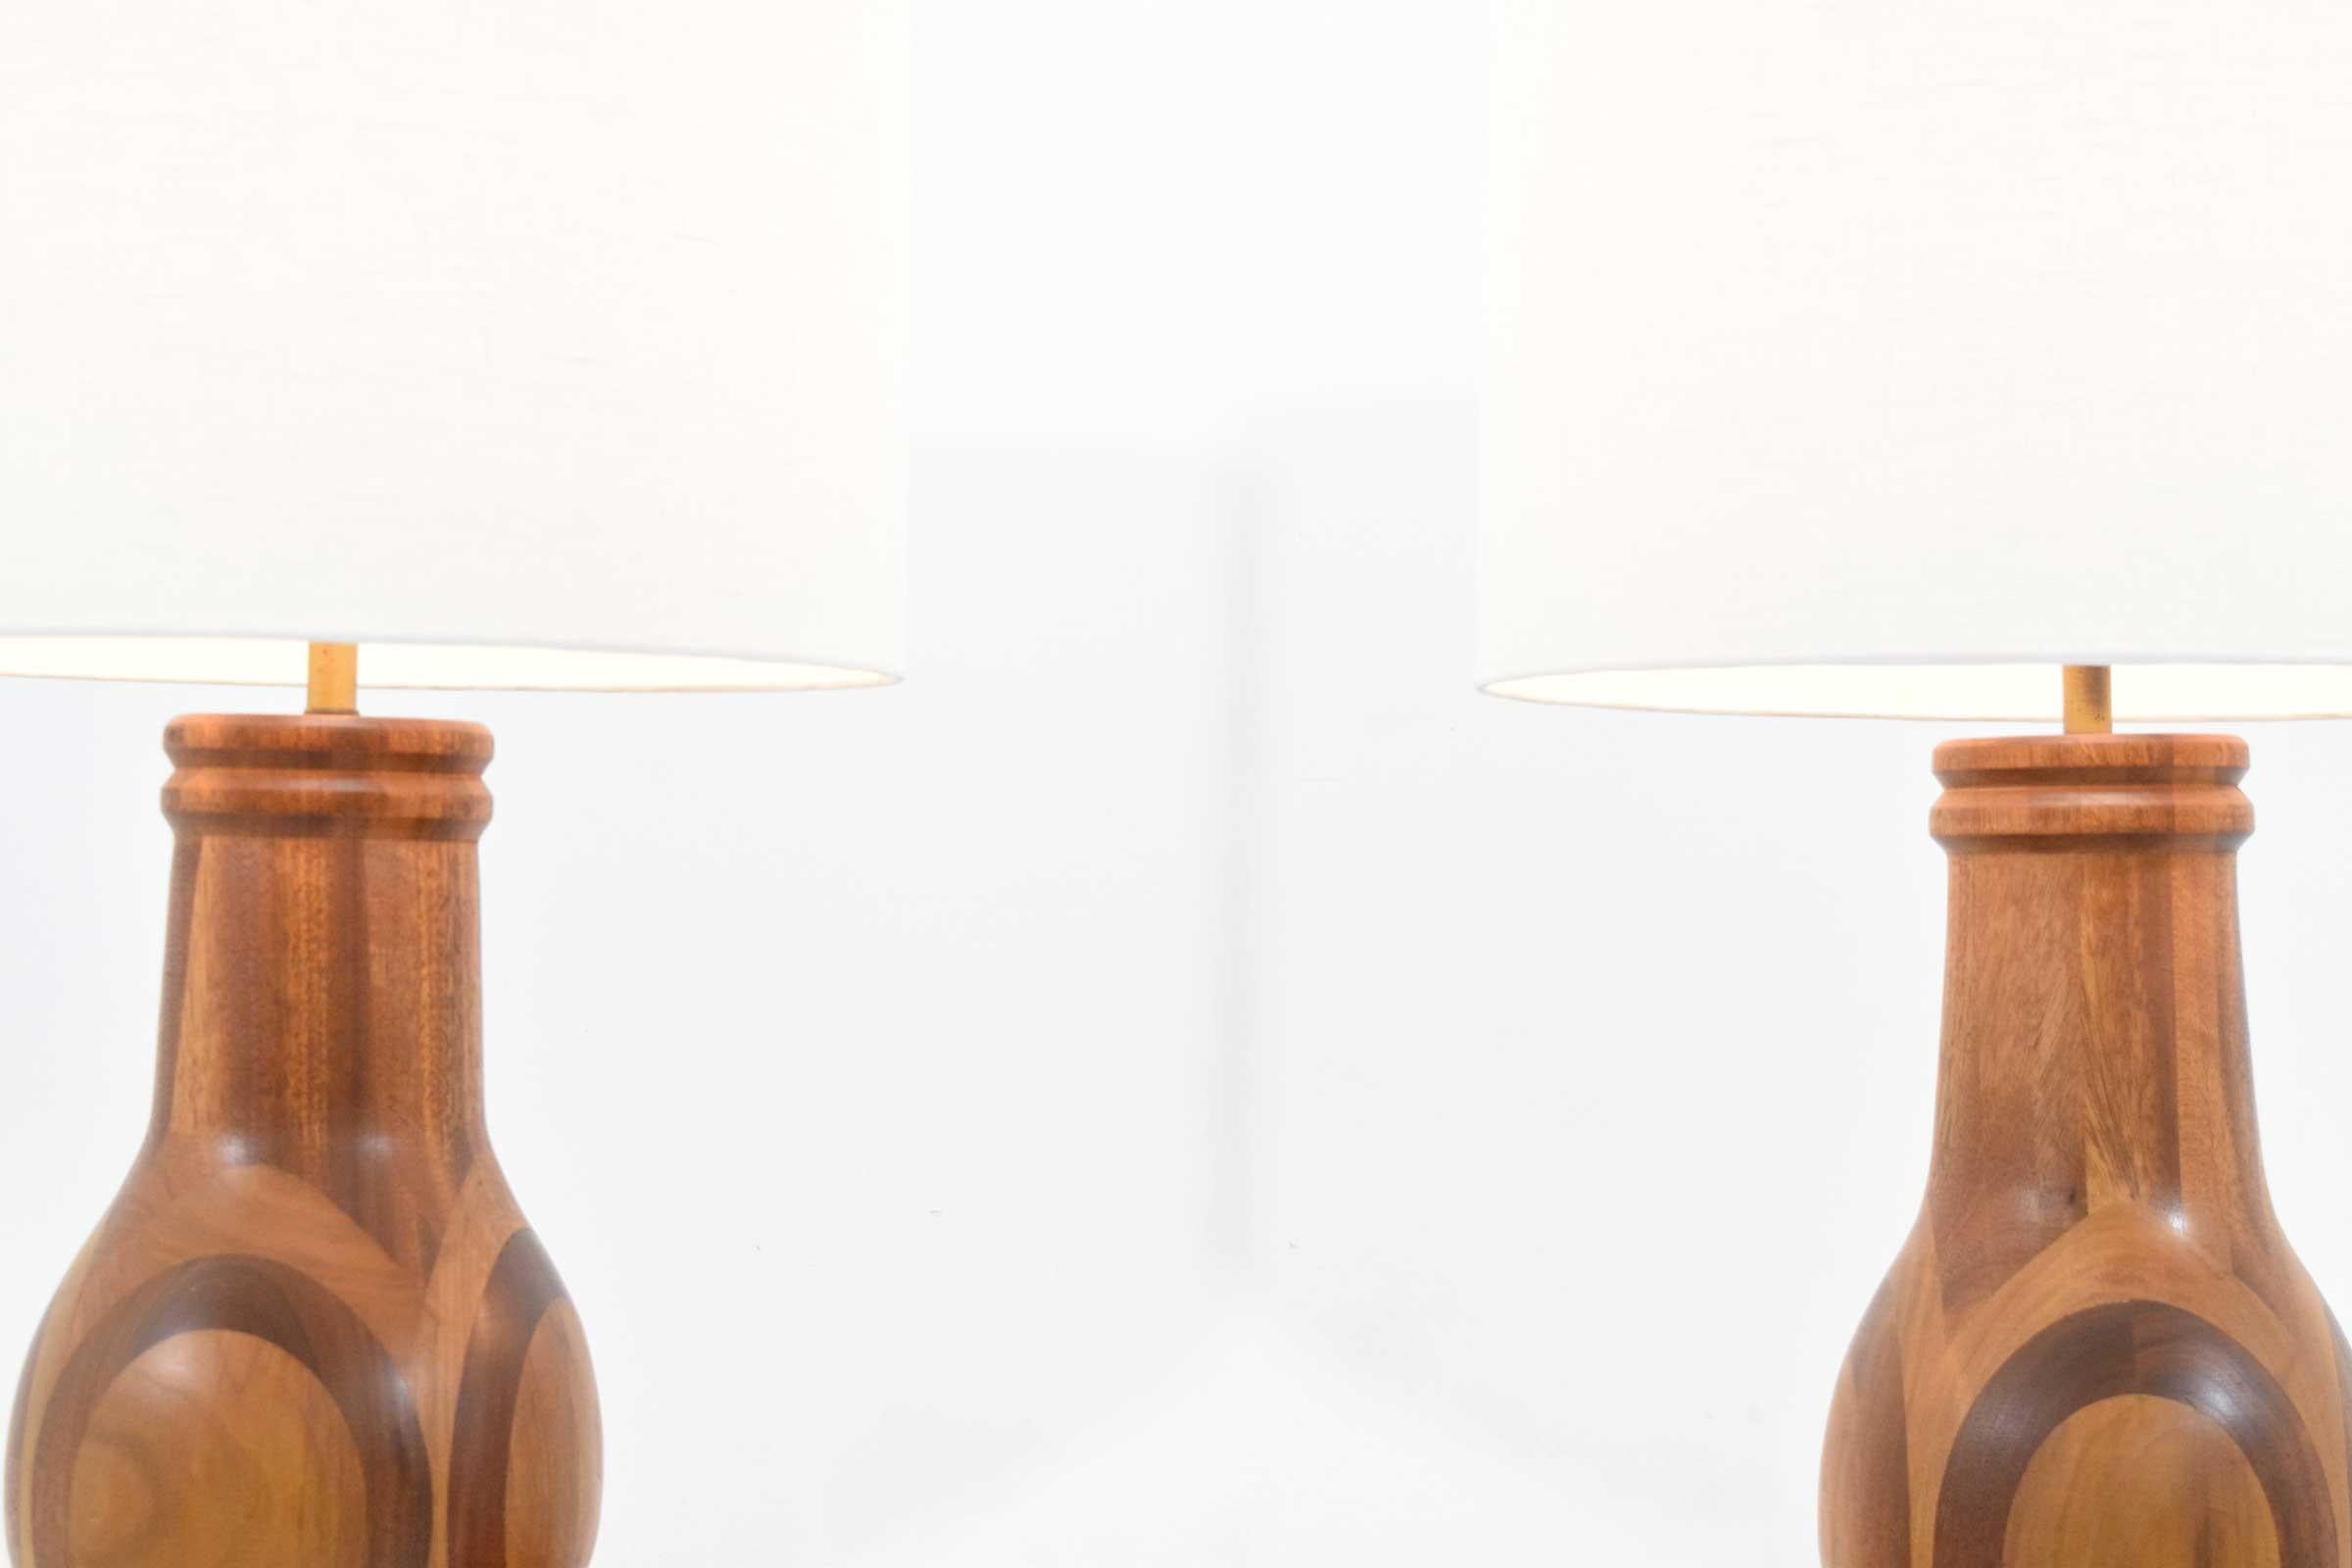 Belle paire de lampes en bois avec un superbe motif de bois incrusté. Les lampes mesurent 36,75